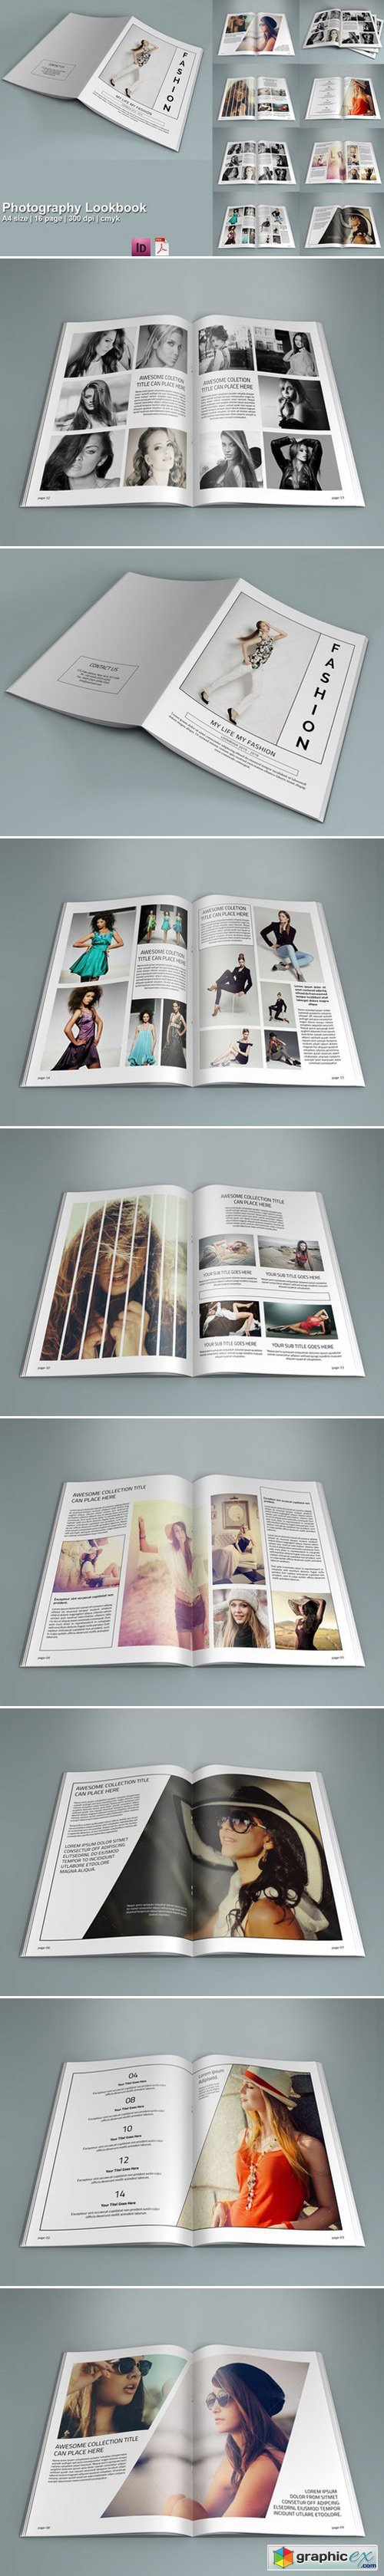 InDesign: Photography Lookbook- V208